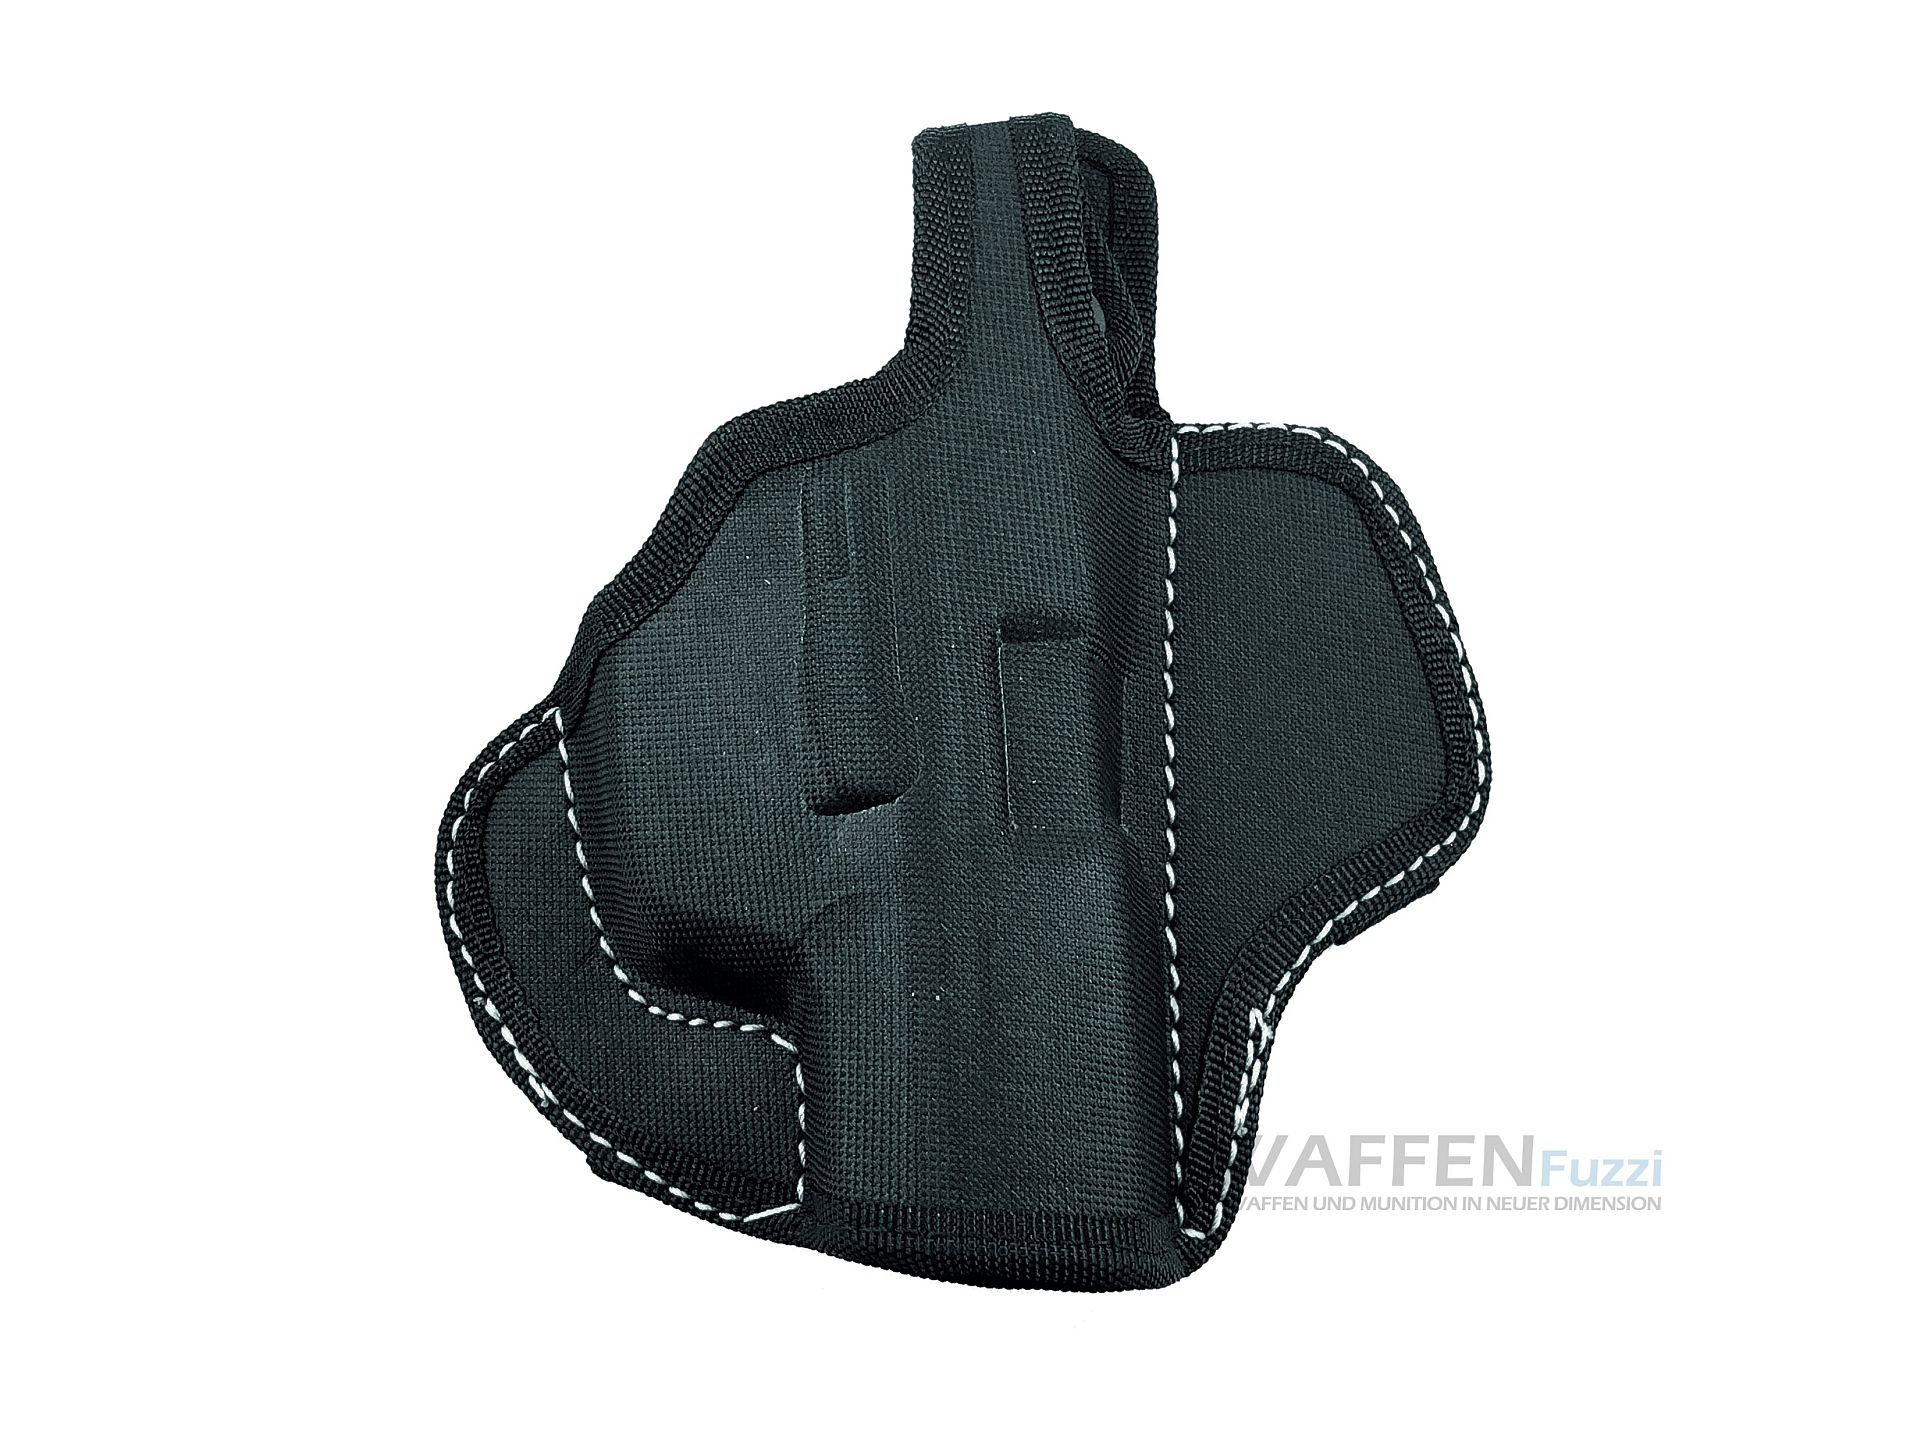 Gürtelholster für IWG15 Pistole aus Nylon mit weissen Nähten